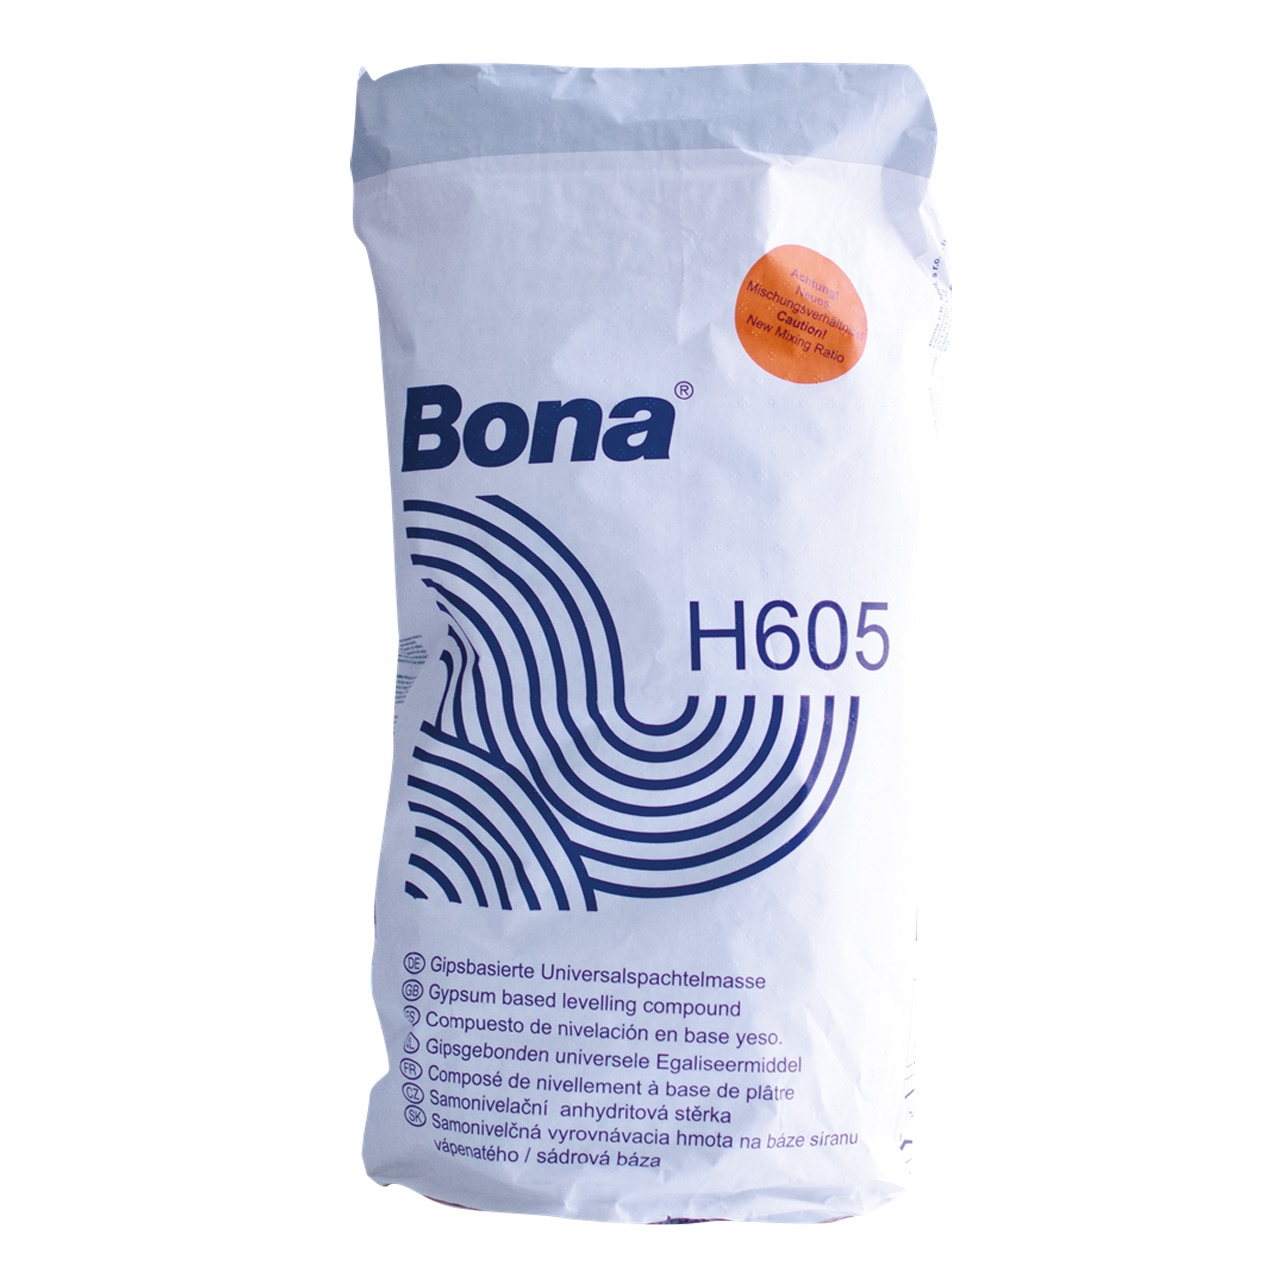 Bona H605 gipsbasierte Spachtelmasse von Bona